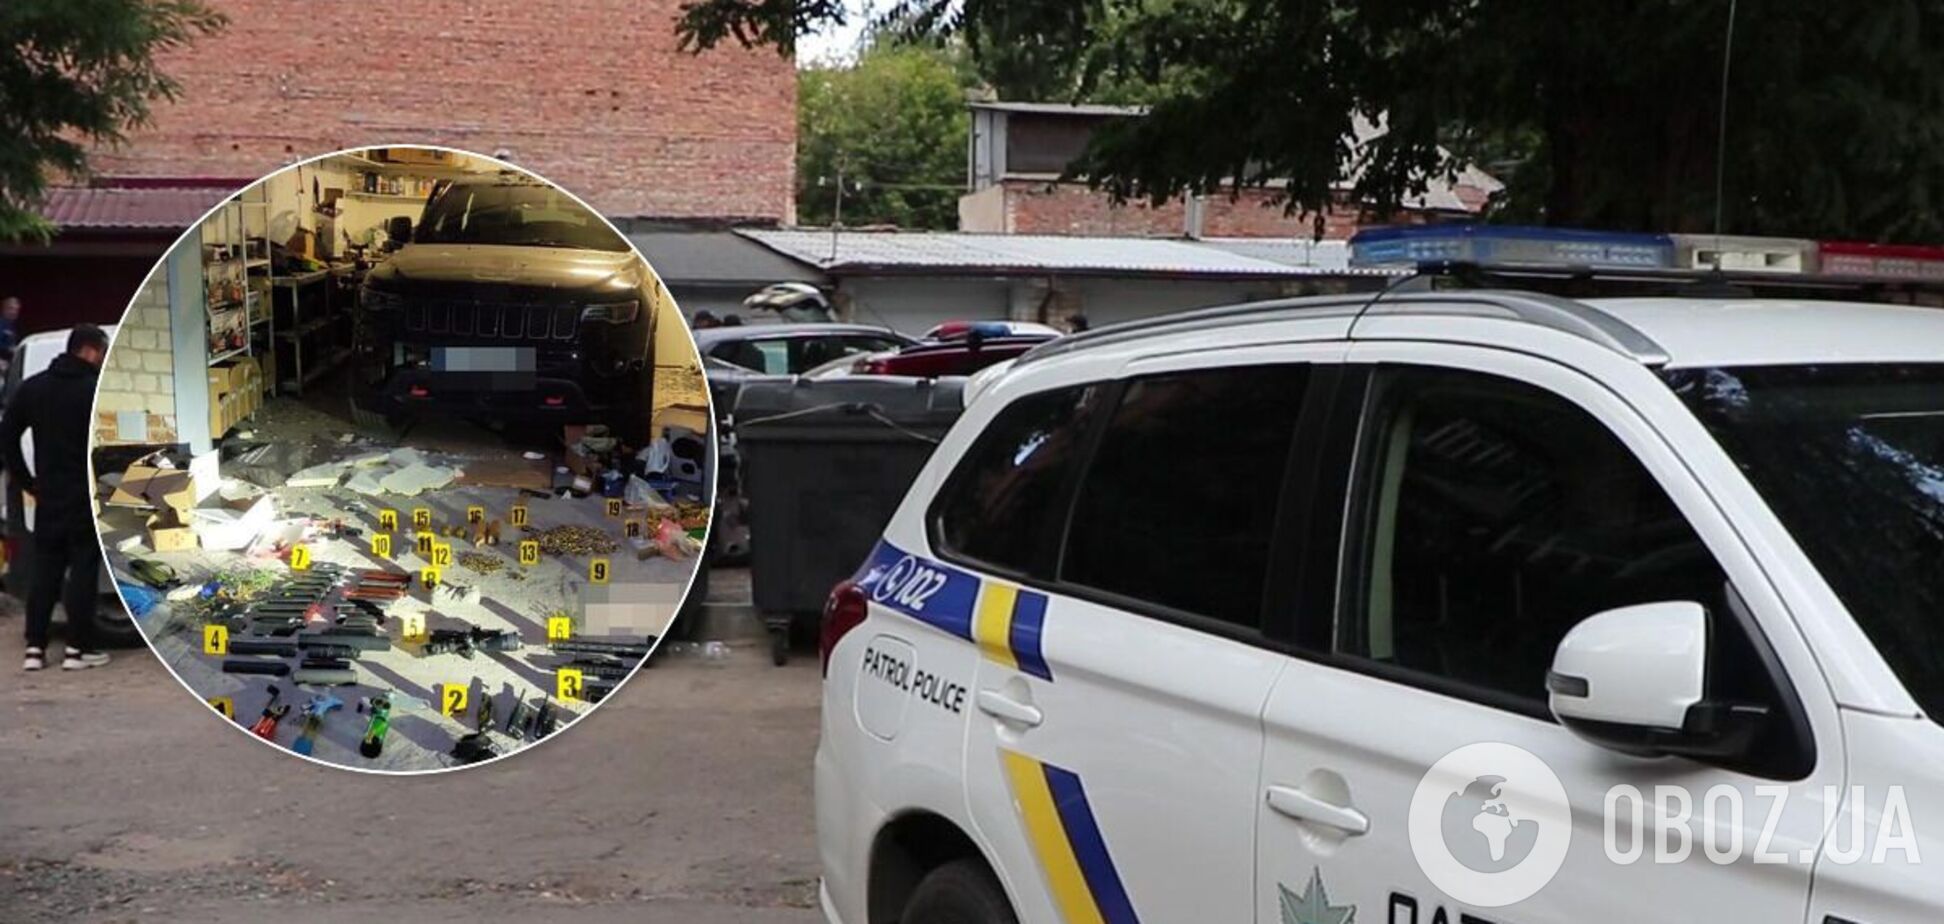 В гараже харьковчанина, который подорвал себя, нашли арсенал боеприпасов. Фото